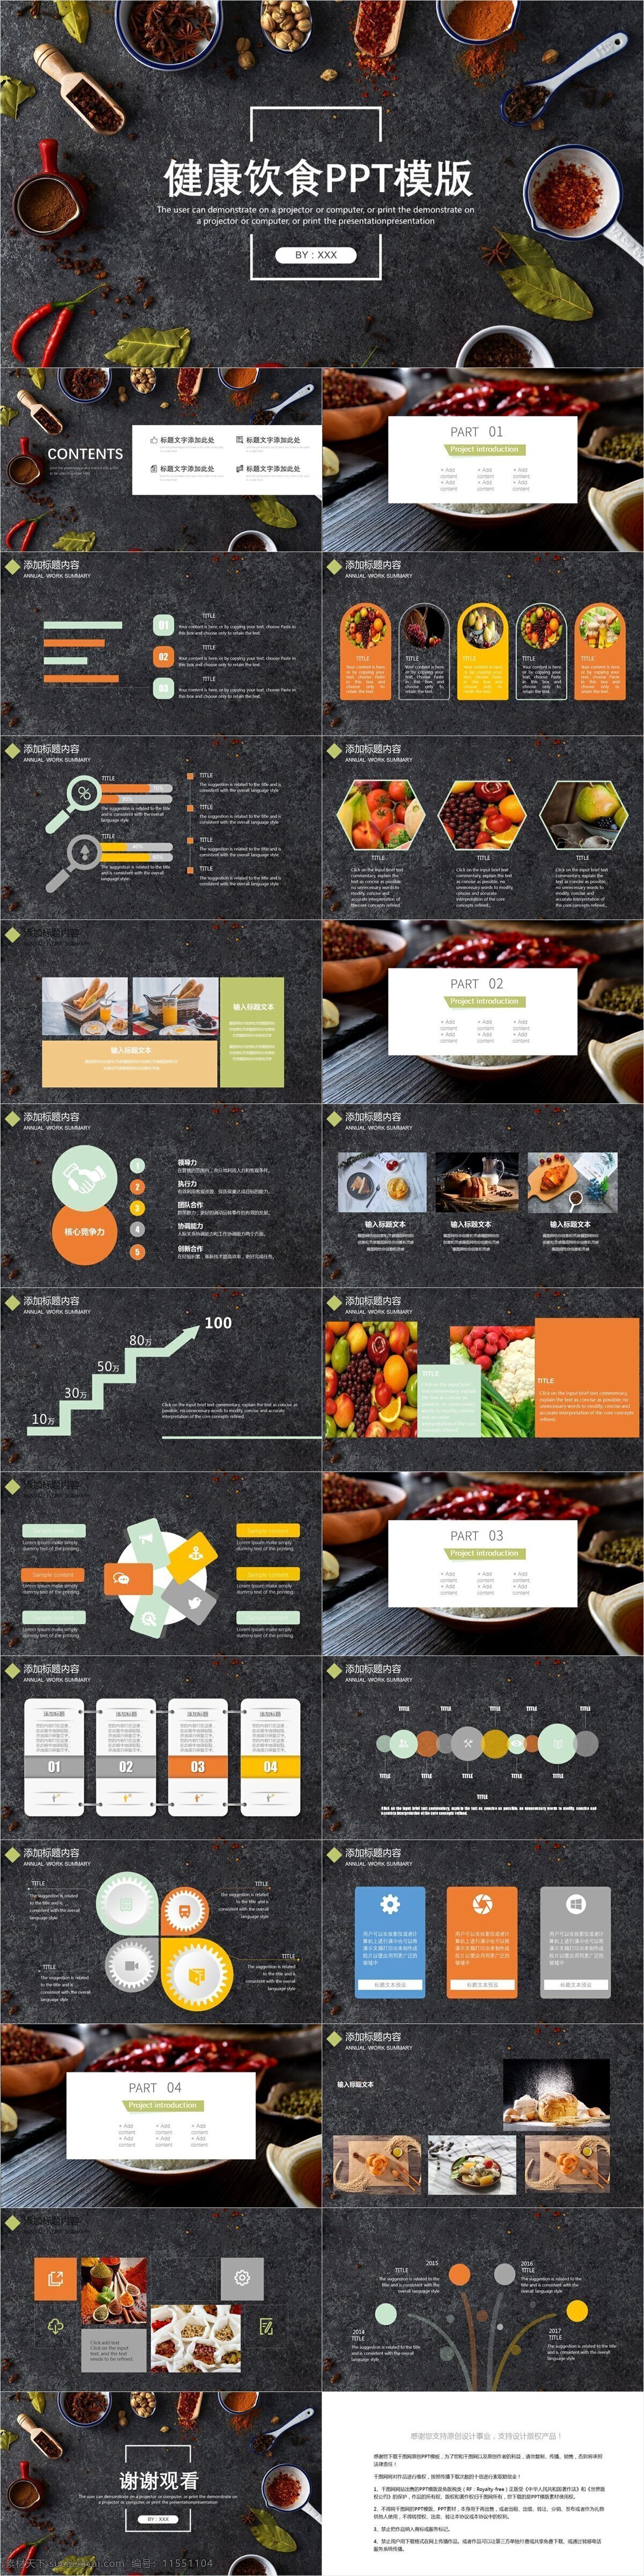 简约 创意 健康饮食 宣传 模板 画册 企业简介 企业宣传 产品介绍 商务合作 策划